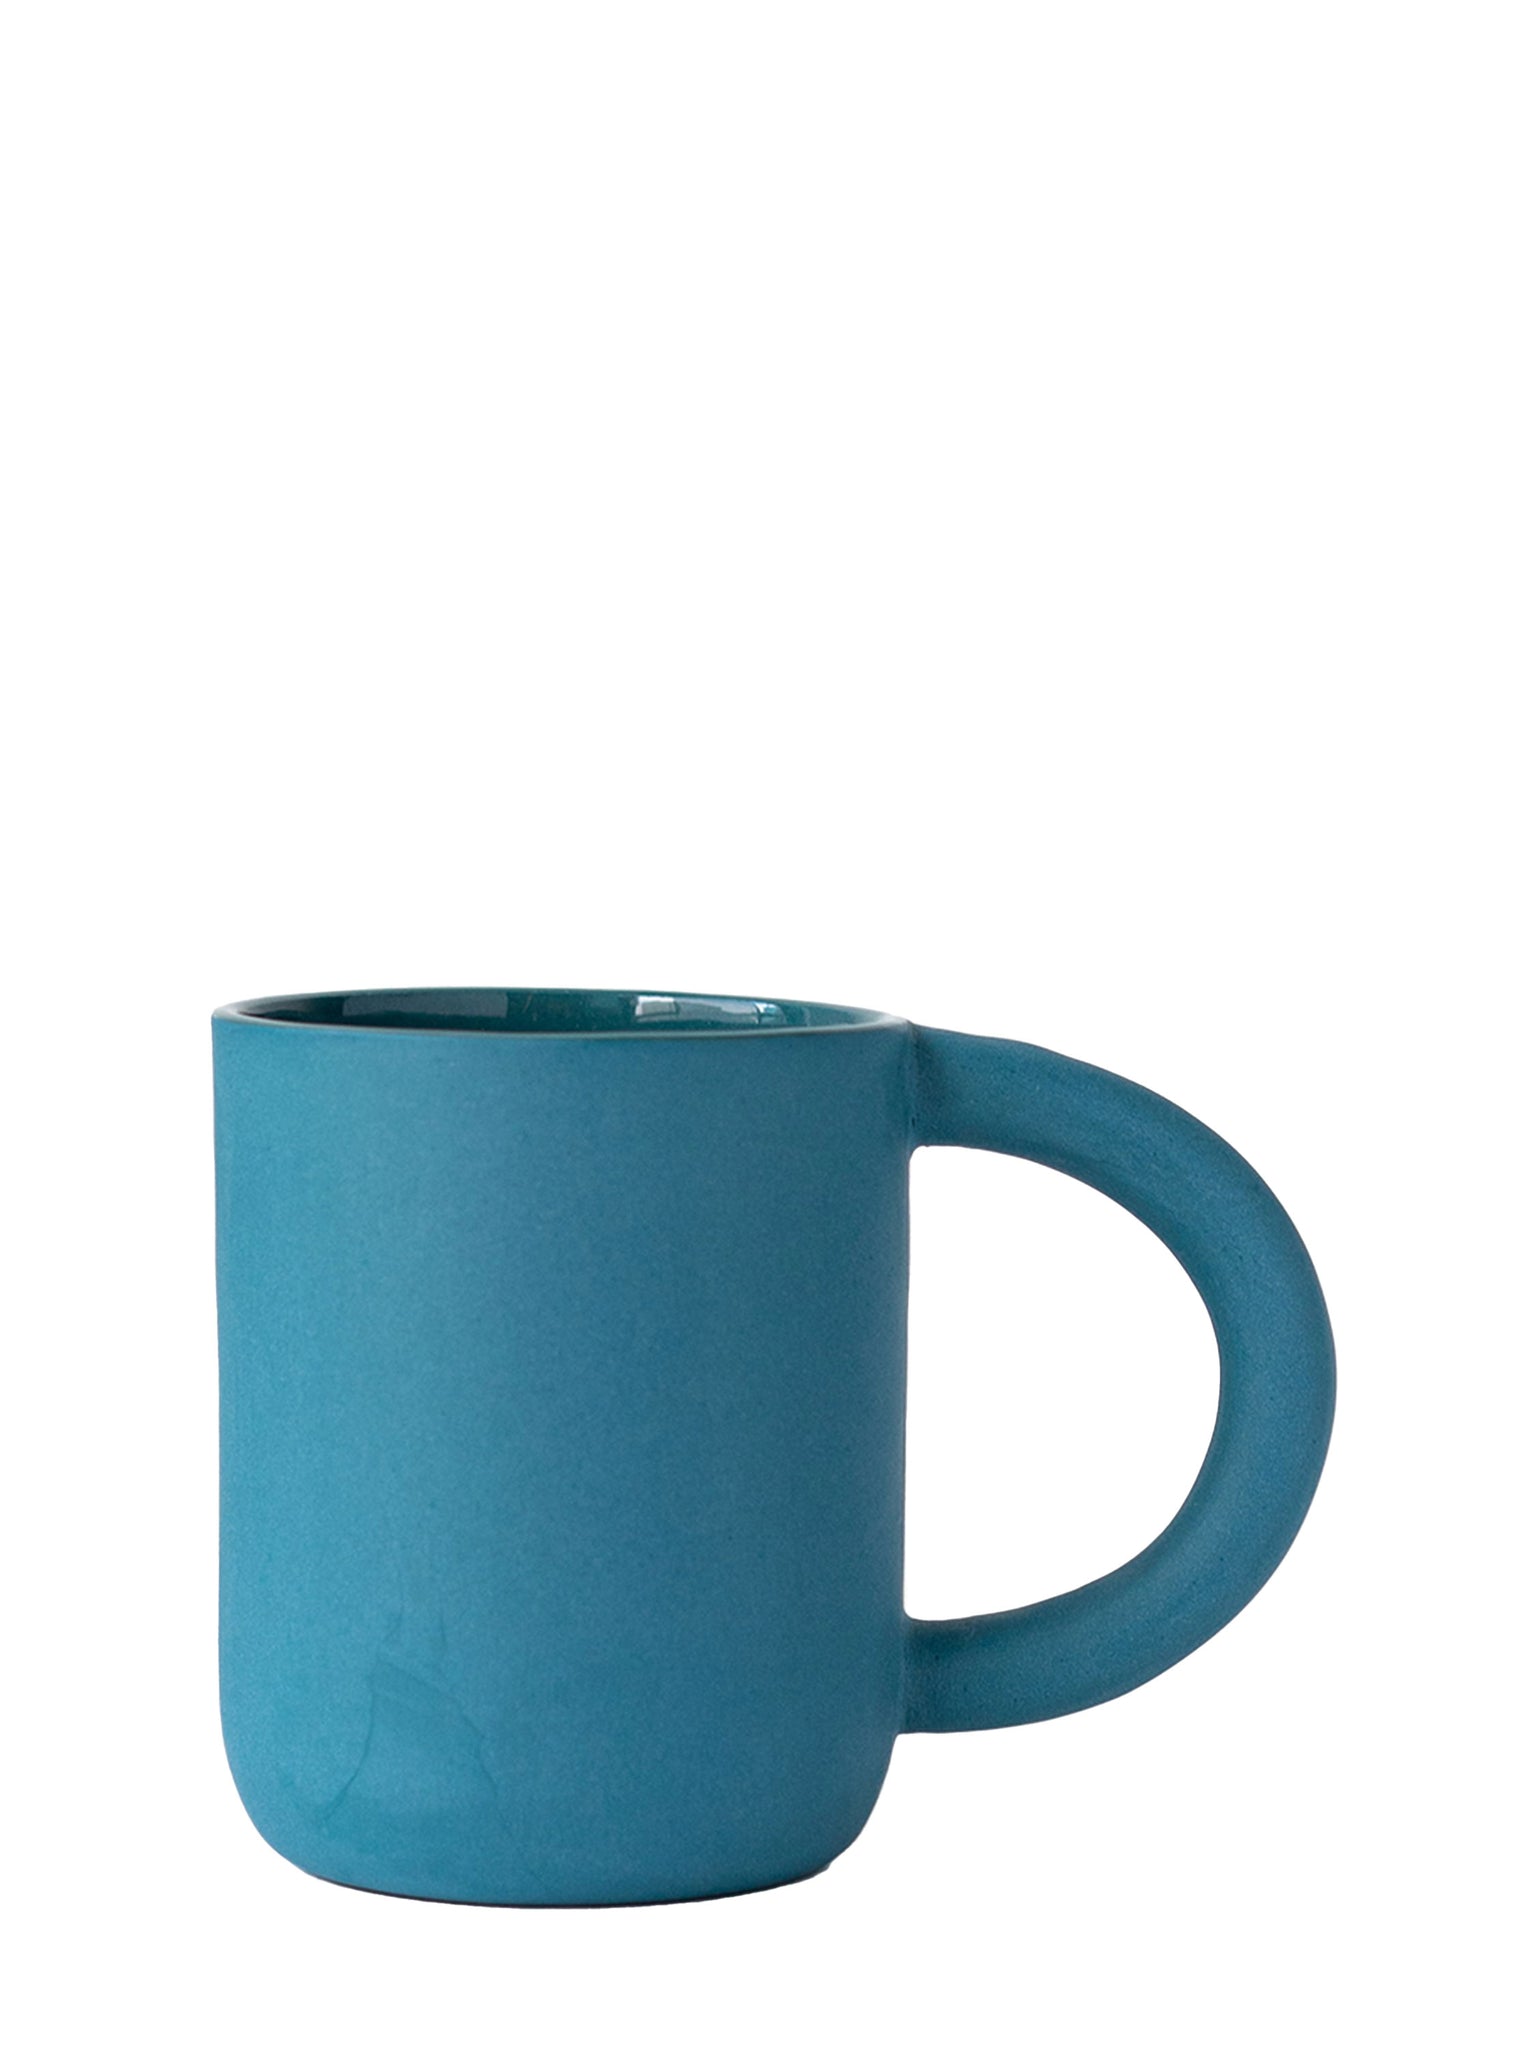 laureanne kootstra design hand made ceramic blue porcelain mug